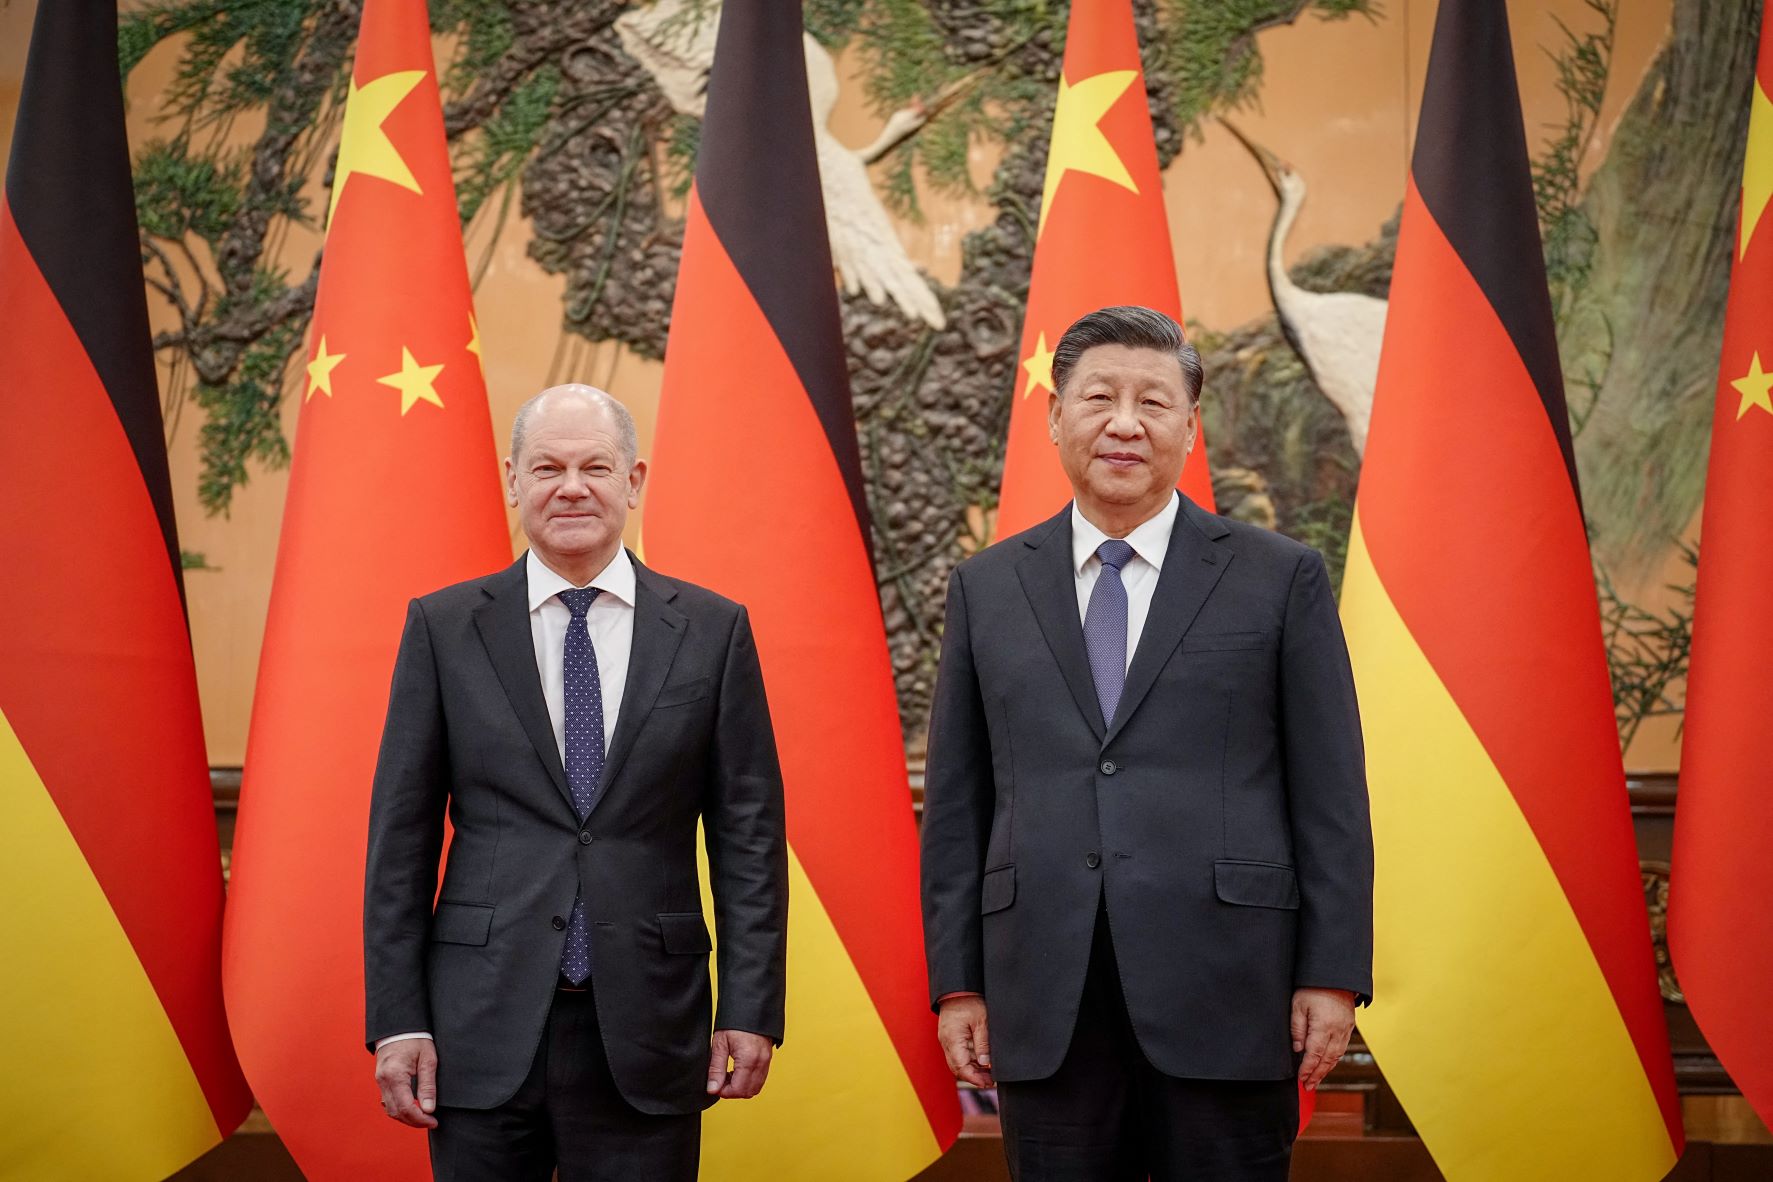 Pour réchauffer ses relations avec la Chine, Olaf Scholz va rencontrer Xi Jinping la semaine prochaine